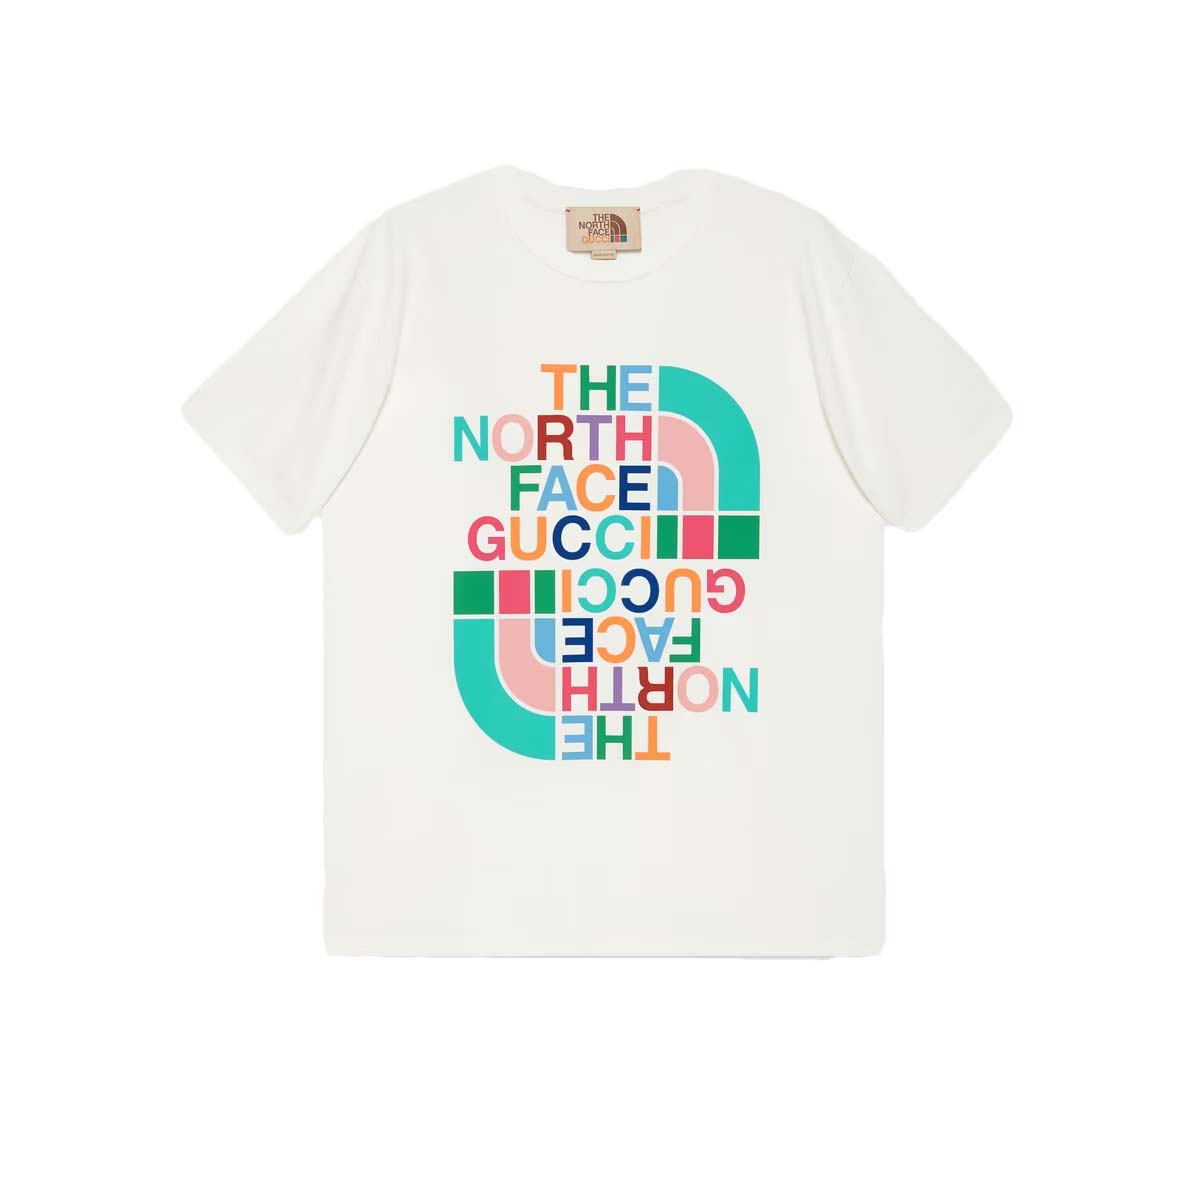 Gucci x The North Face Cotton T-shirt White/Multicolor